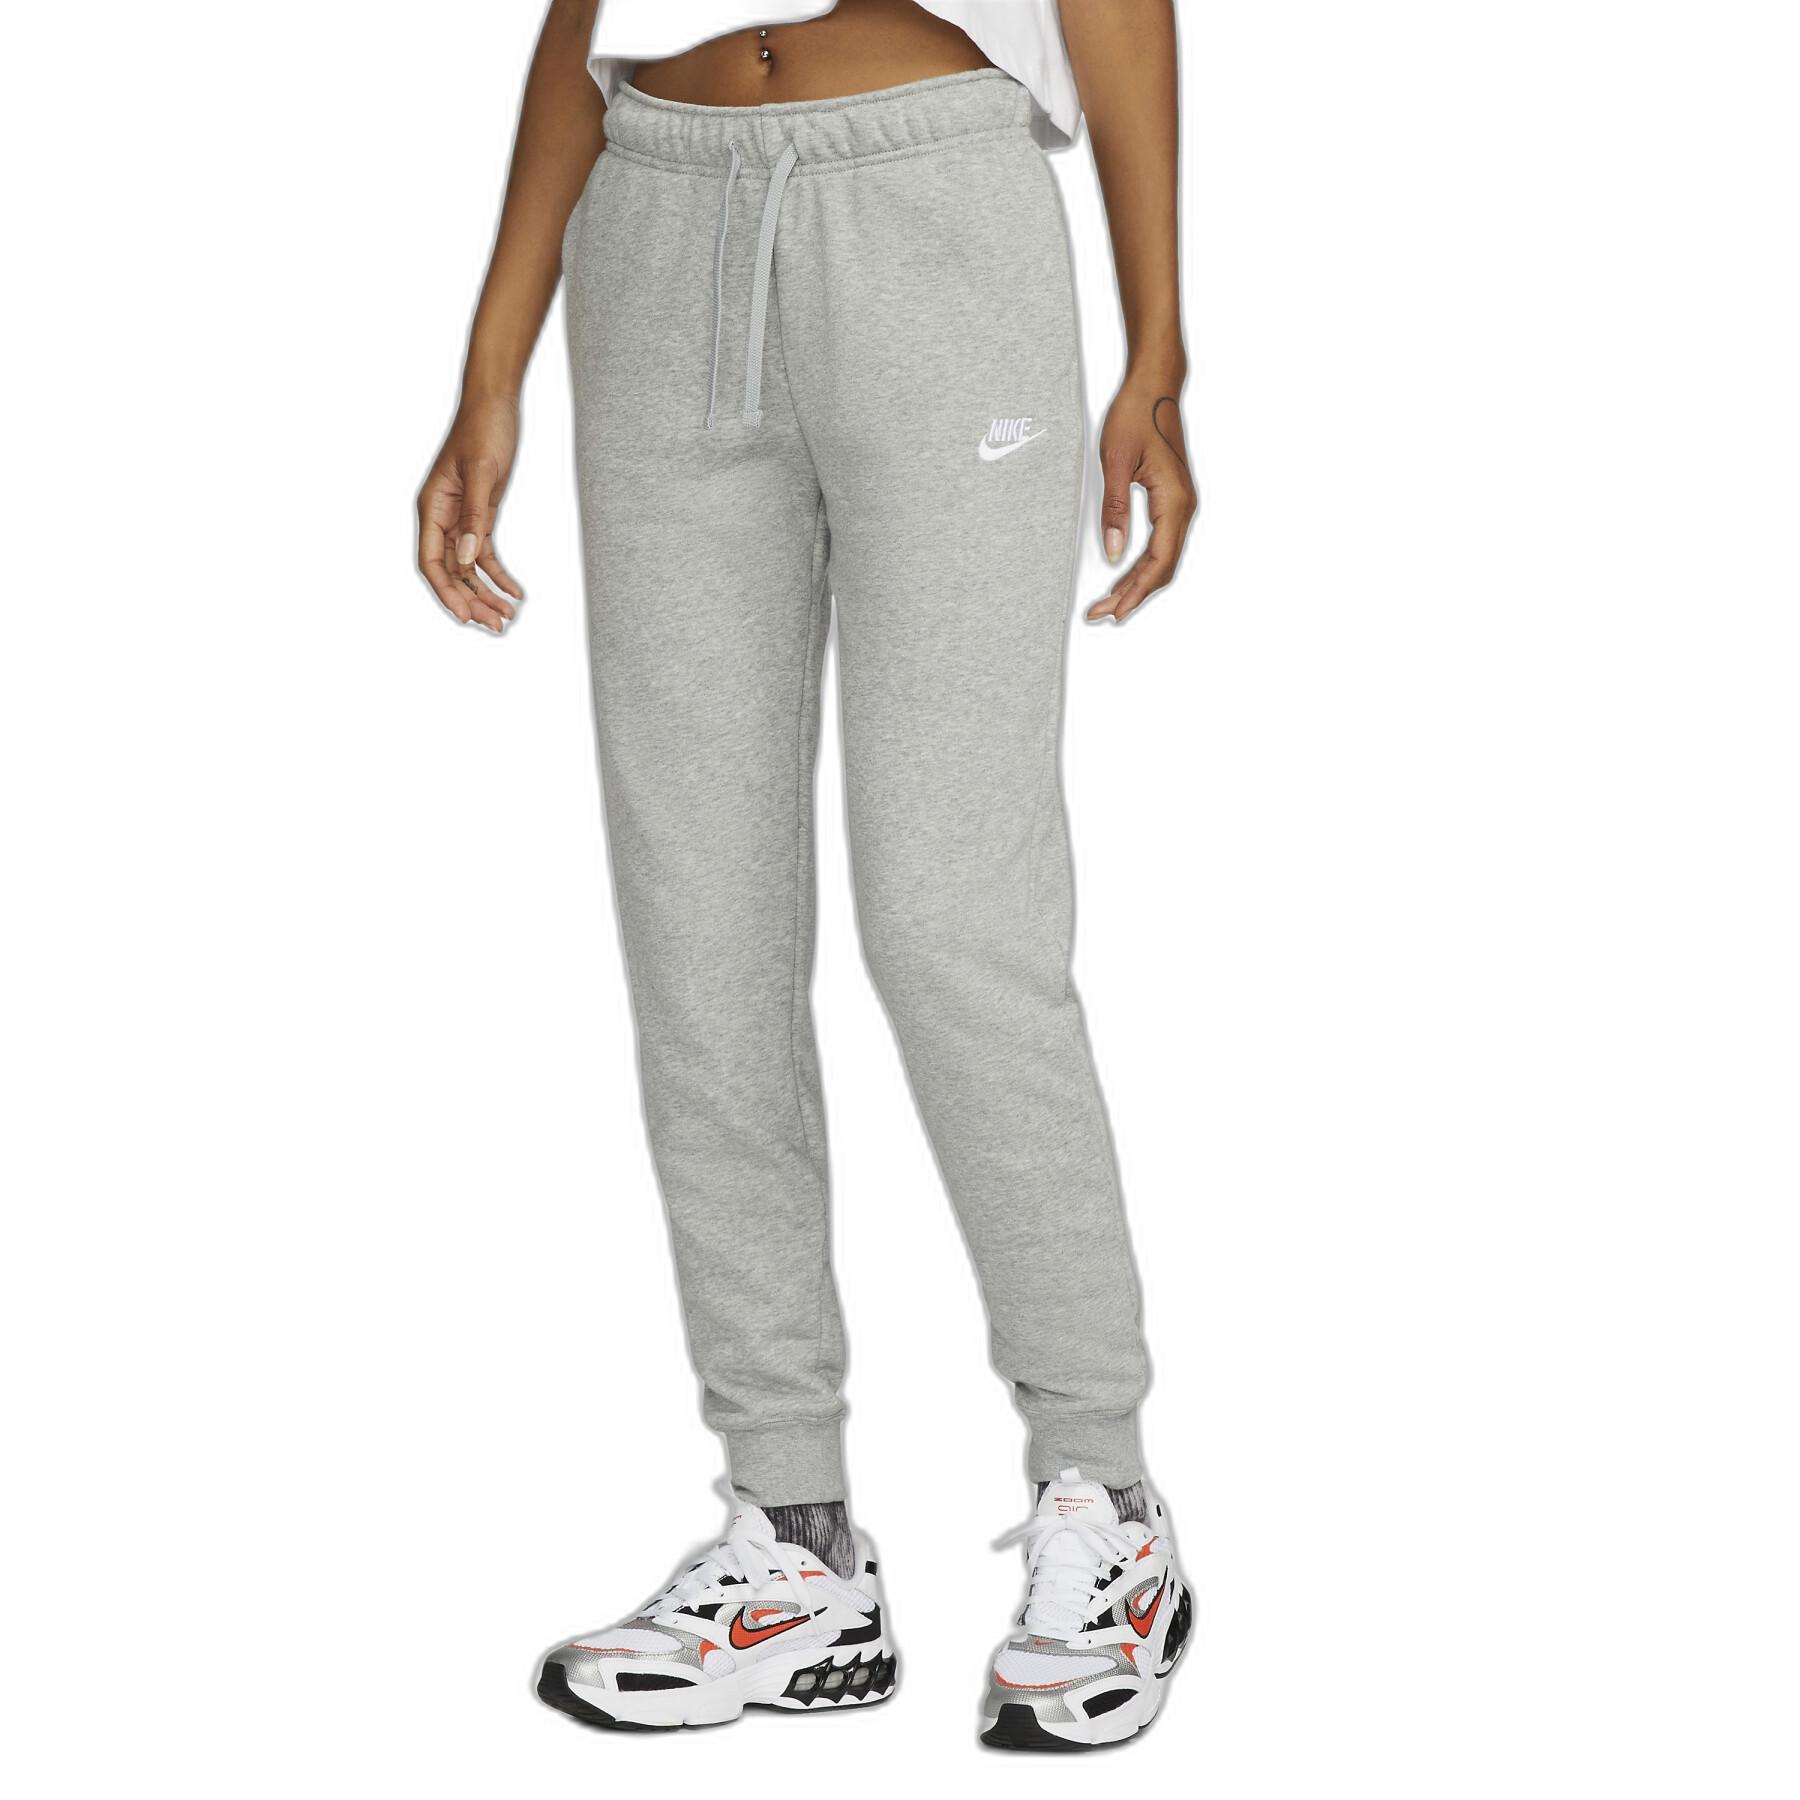 Women's jogging suit Nike Sportswear Club Fleece - Nike - Brands